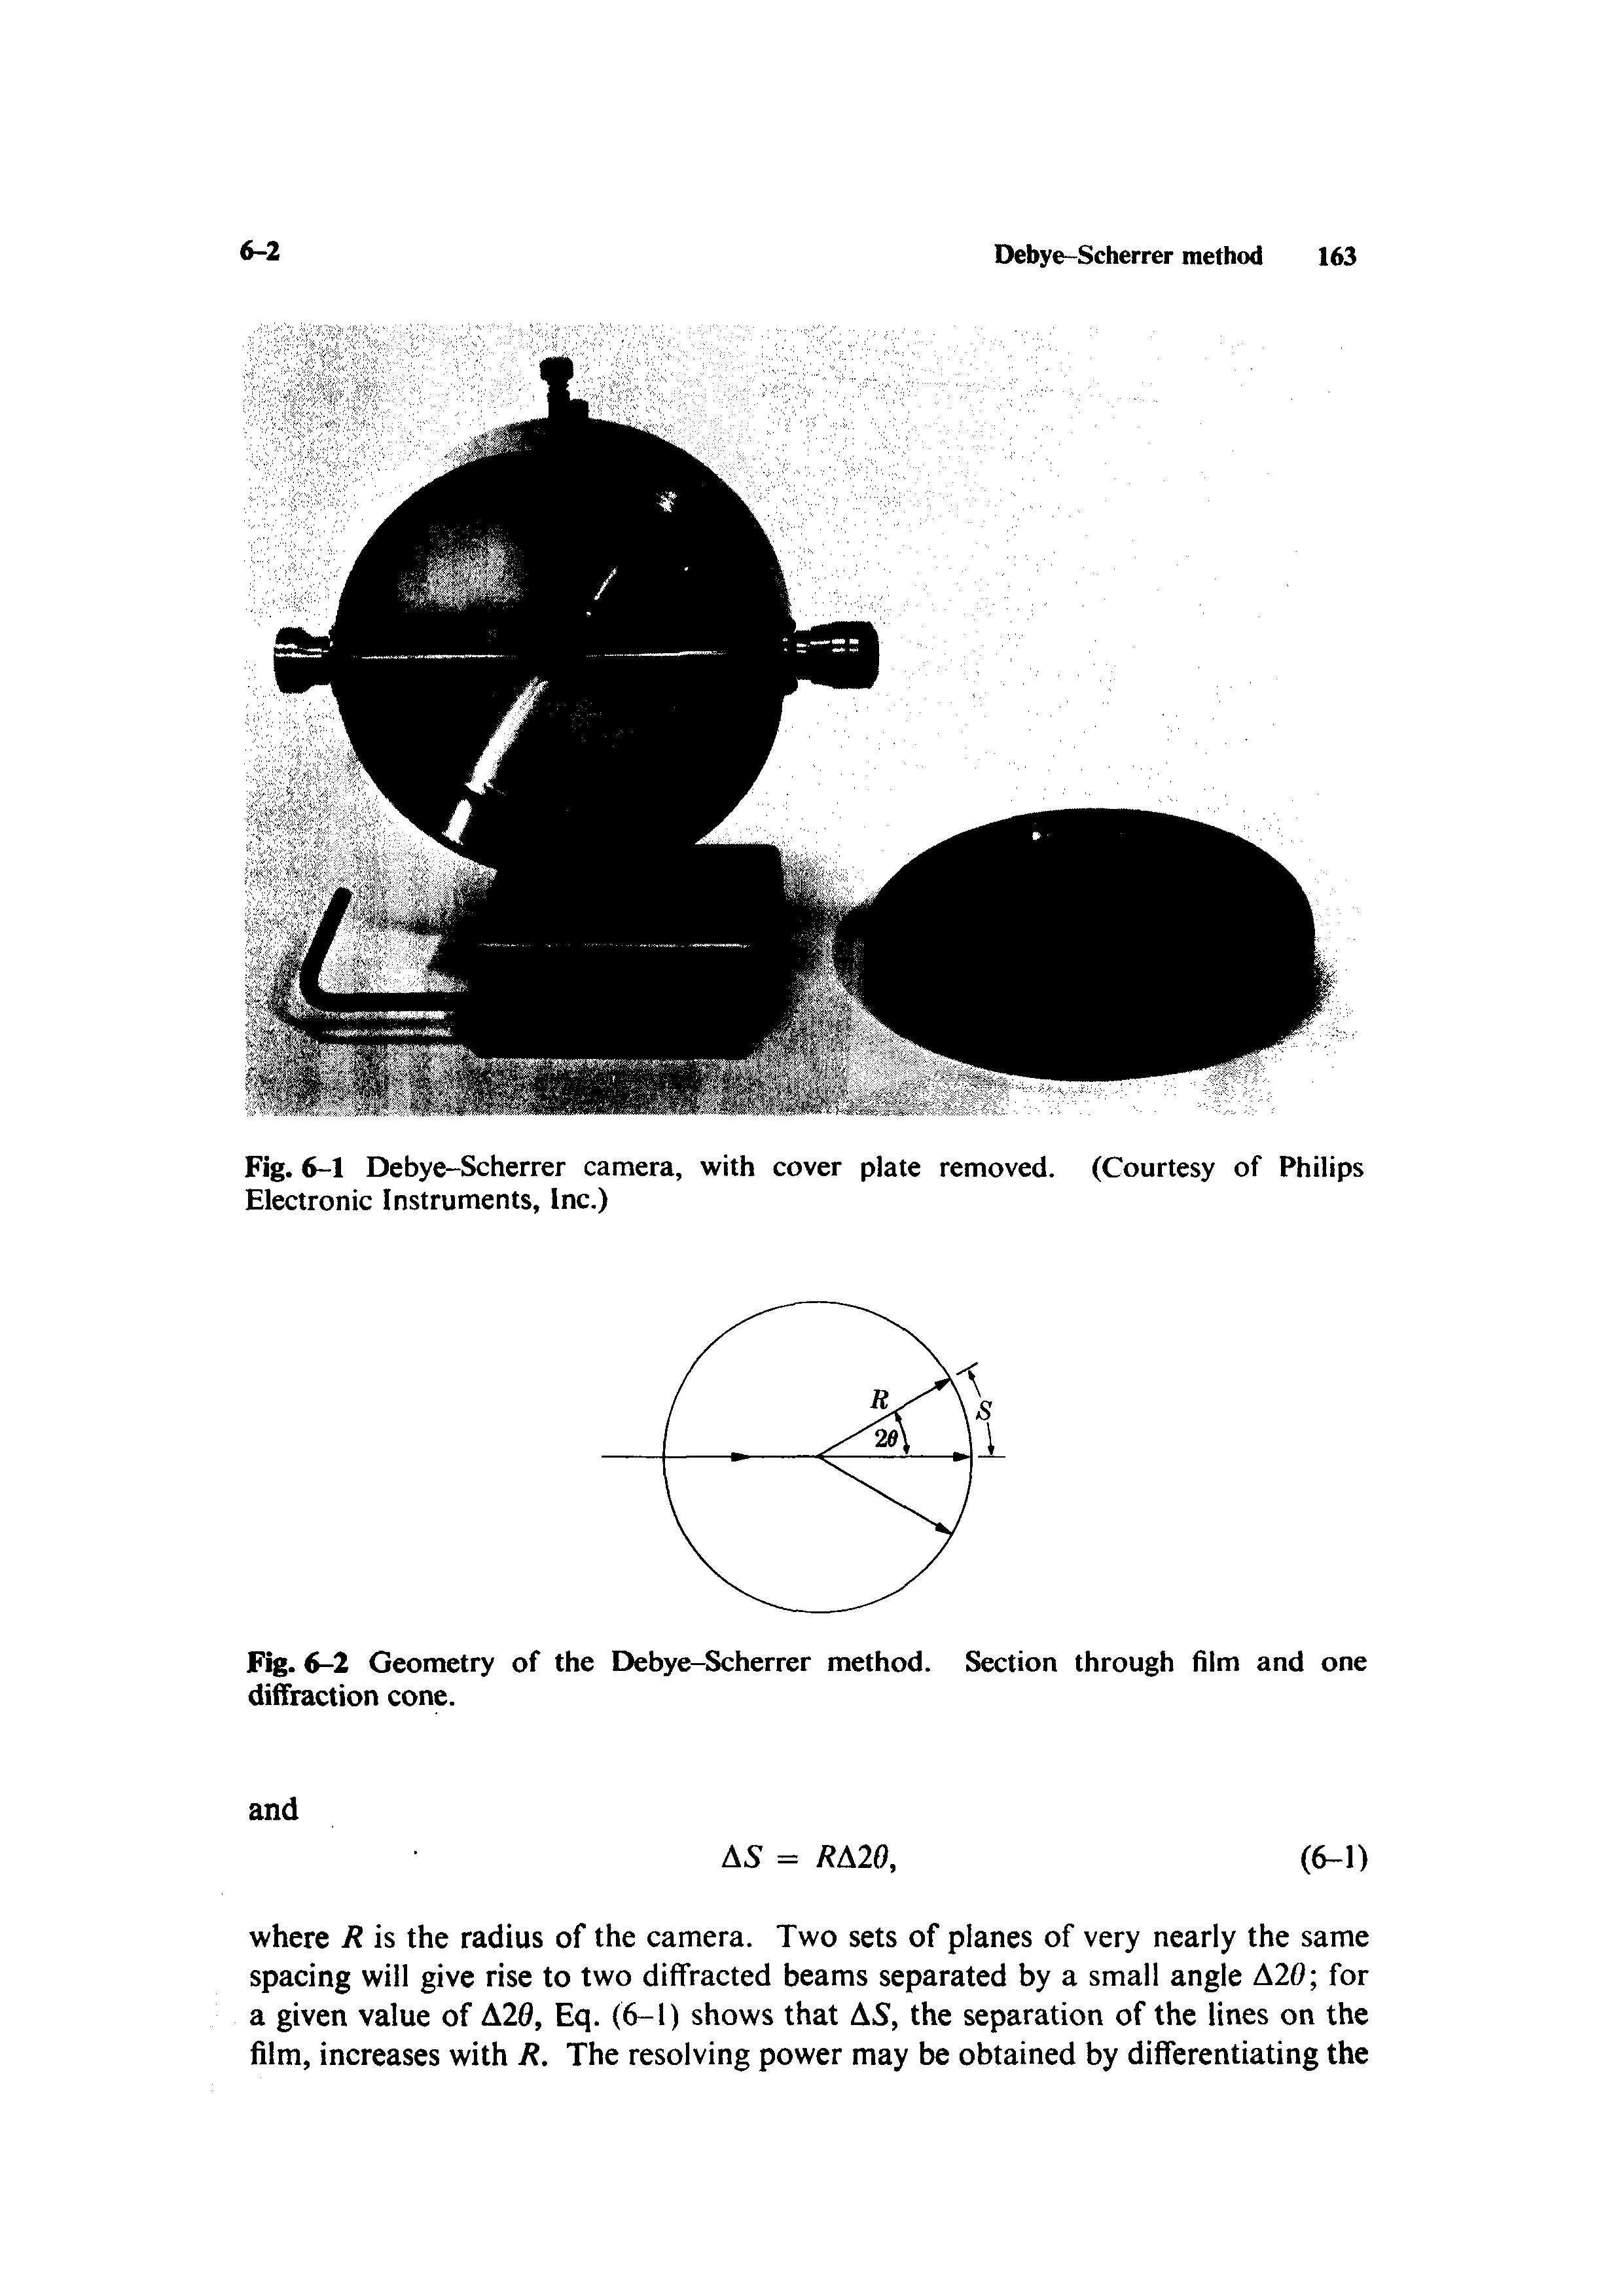 Fig. 6-2 Geometry of the Debye-Scherrer method, diffraction cone.